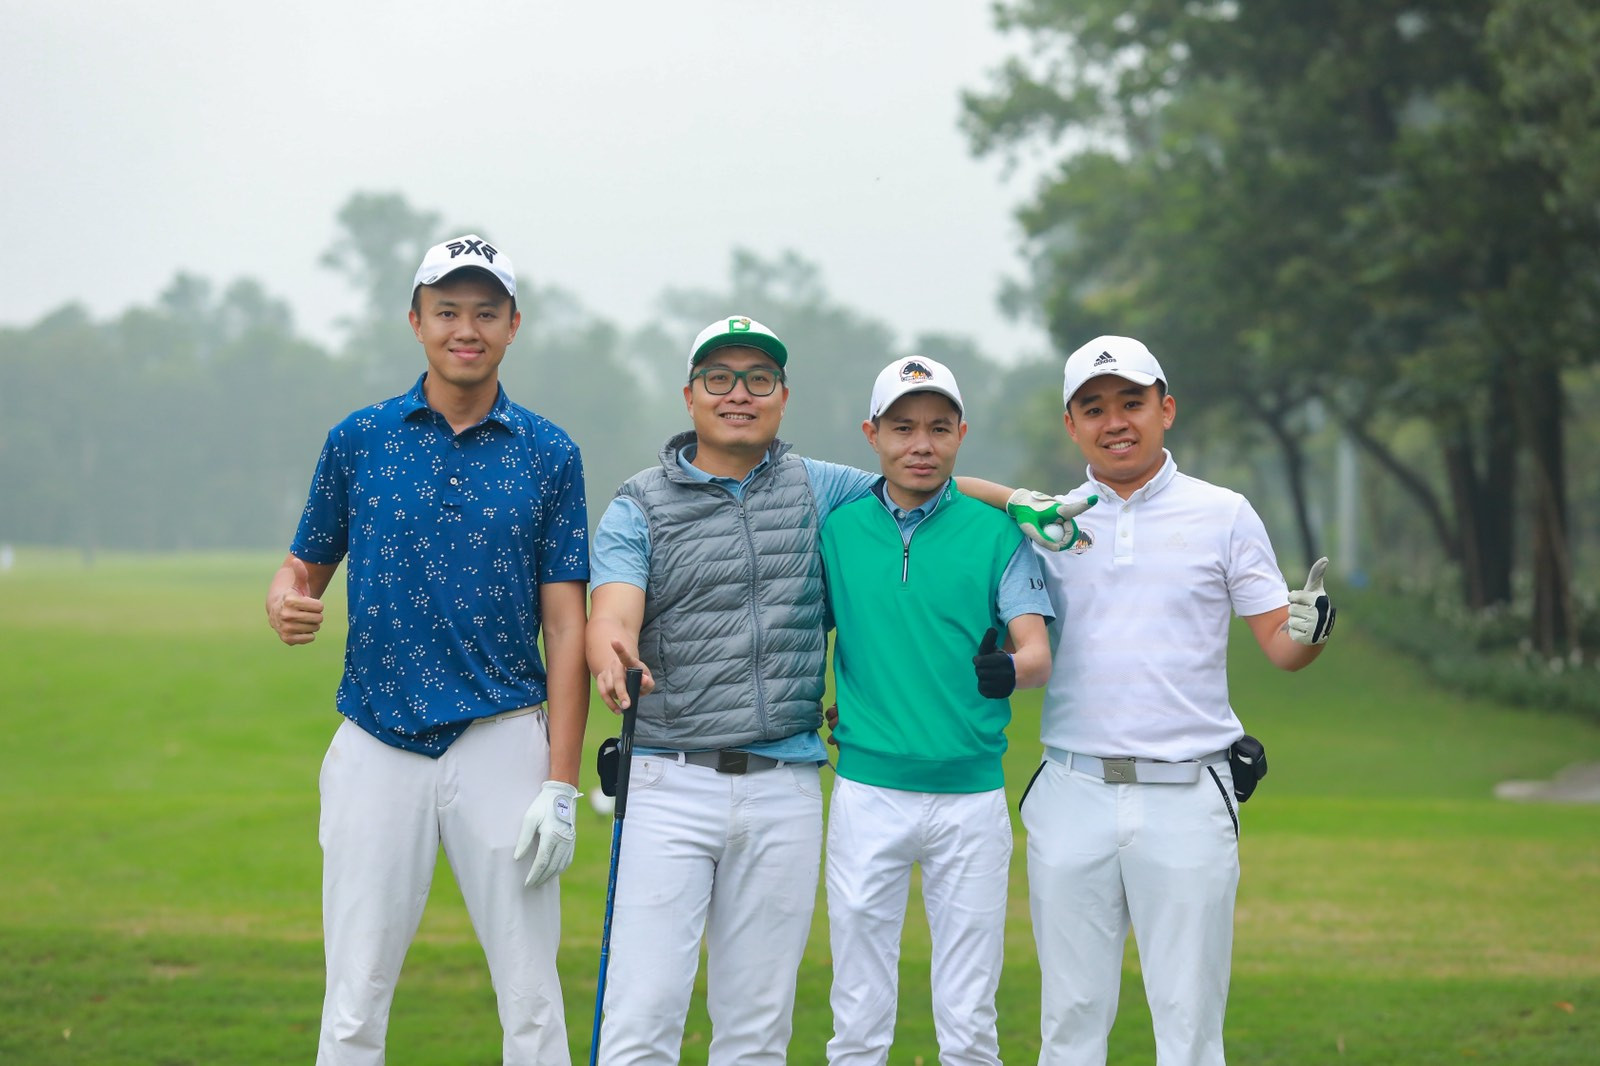 CLB Golf Đinh Mão tổ chức Outing tháng 3 ra mắt các thành viên mới - Ảnh 5.